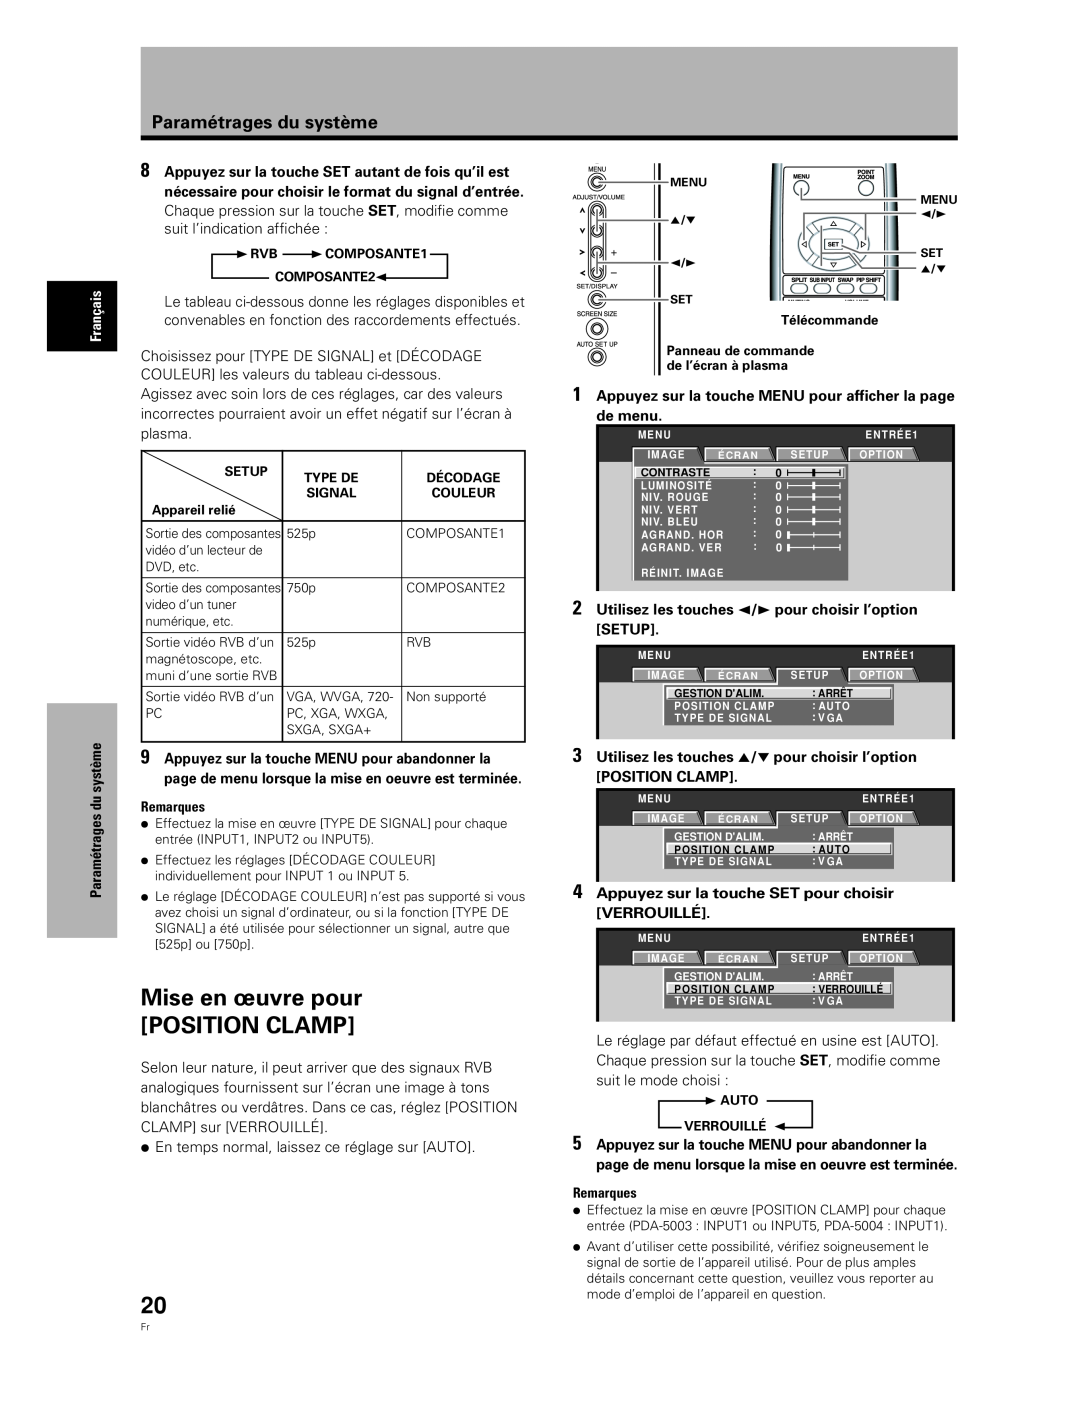 Pioneer PDA-5004, PDA-5003 manual Mise en œuvre pour POSITION CLAMP, Paramétrages du système 